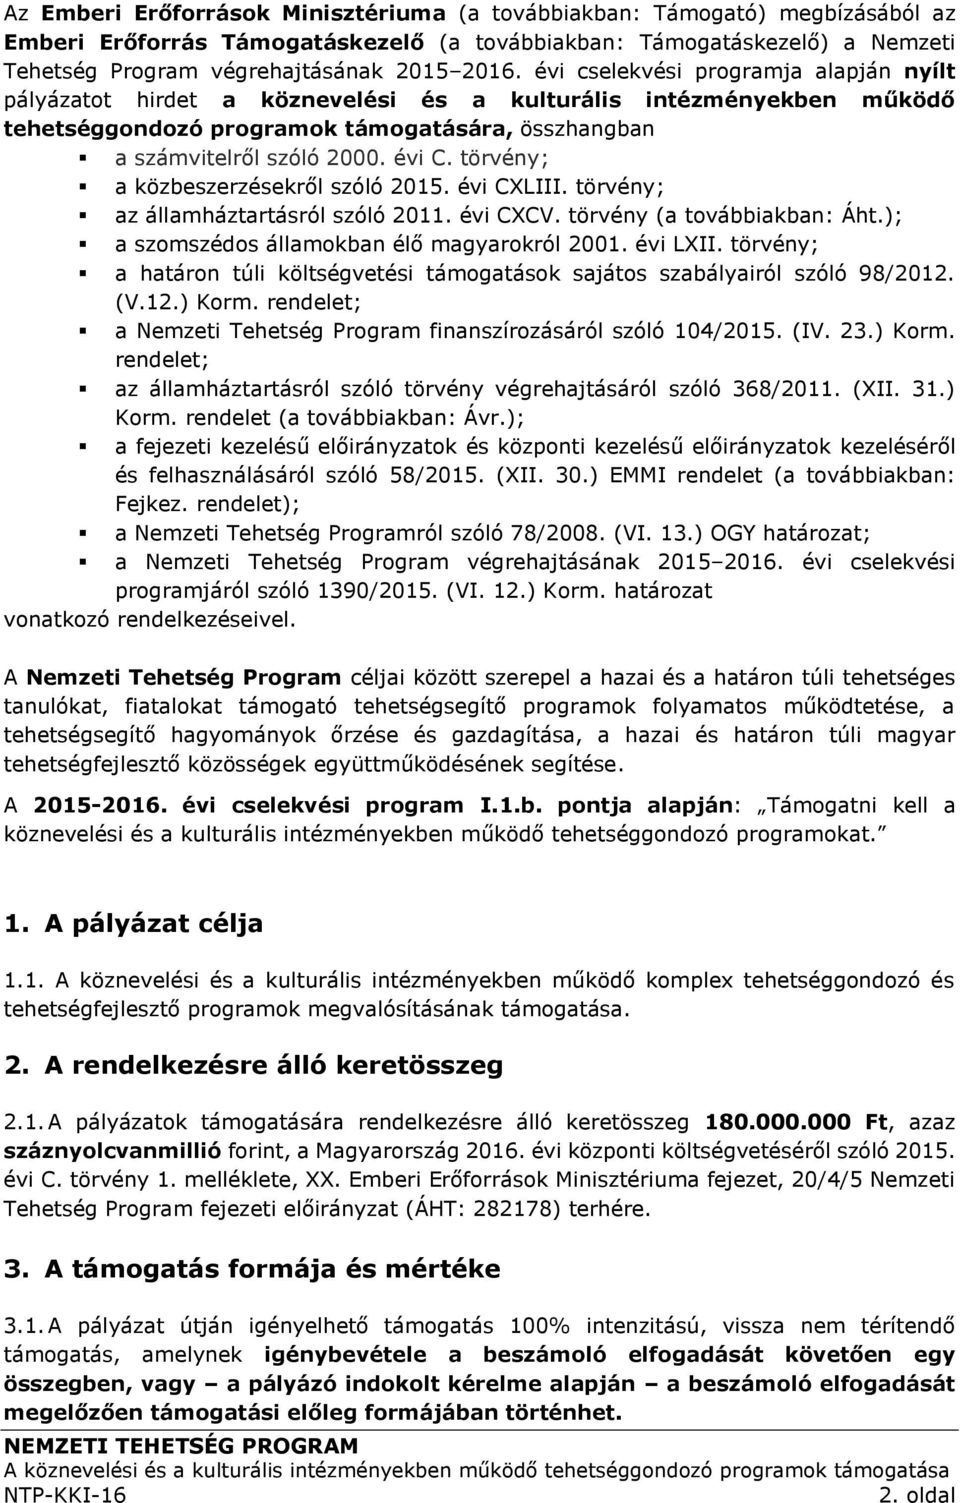 törvény; a közbeszerzésekről szóló 2015. évi CXLIII. törvény; az államháztartásról szóló 2011. évi CXCV. törvény (a továbbiakban: Áht.); a szomszédos államokban élő magyarokról 2001. évi LXII.